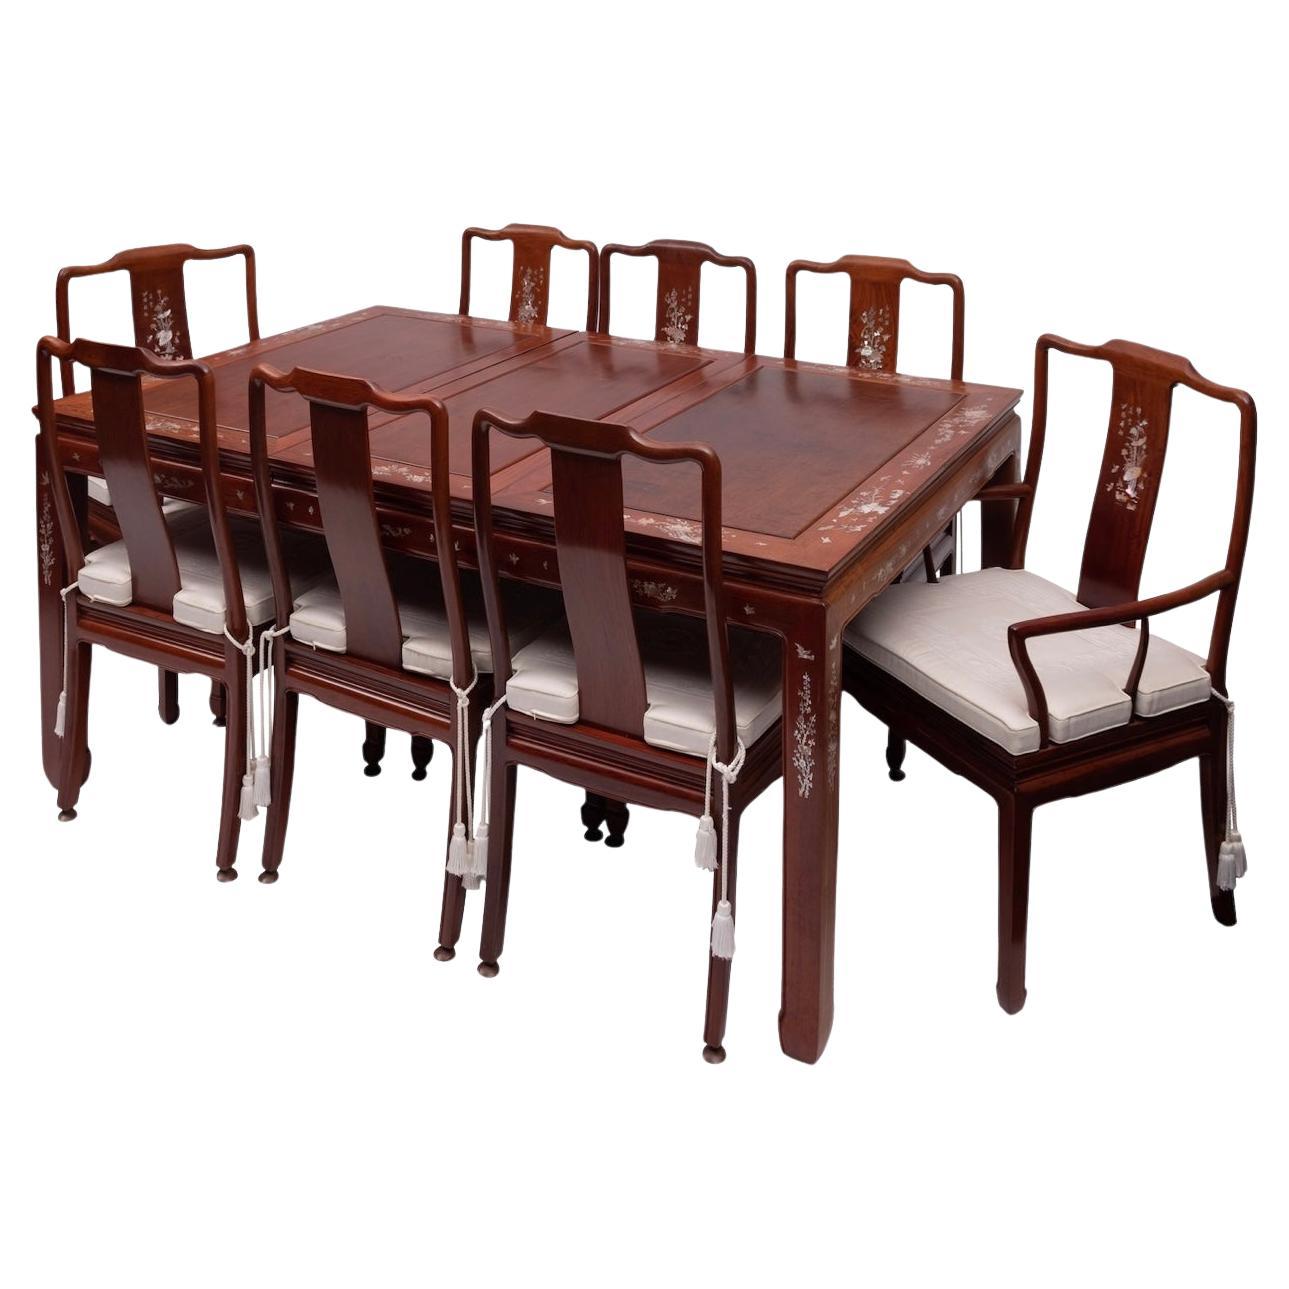 Atemberaubender asiatischer Esstisch aus Hartholz und Perlmutt mit Intarsien und acht Stühlen